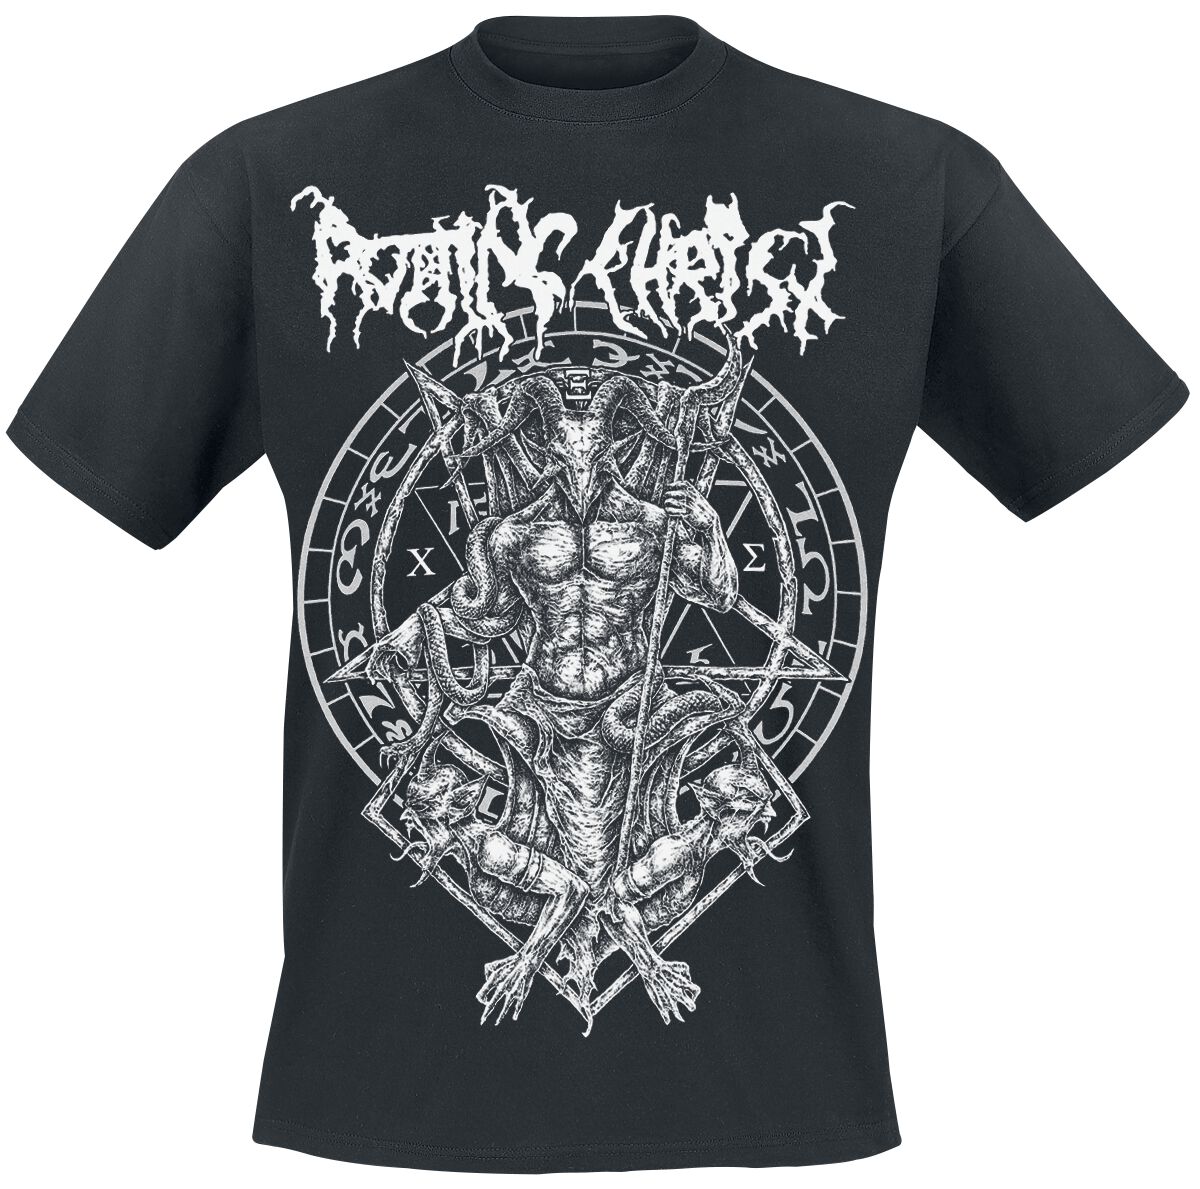 Rotting Christ T-Shirt - Hellenic Black Metal Legions - S bis XXL - für Männer - Größe XXL - schwarz  - Lizenziertes Merchandise!